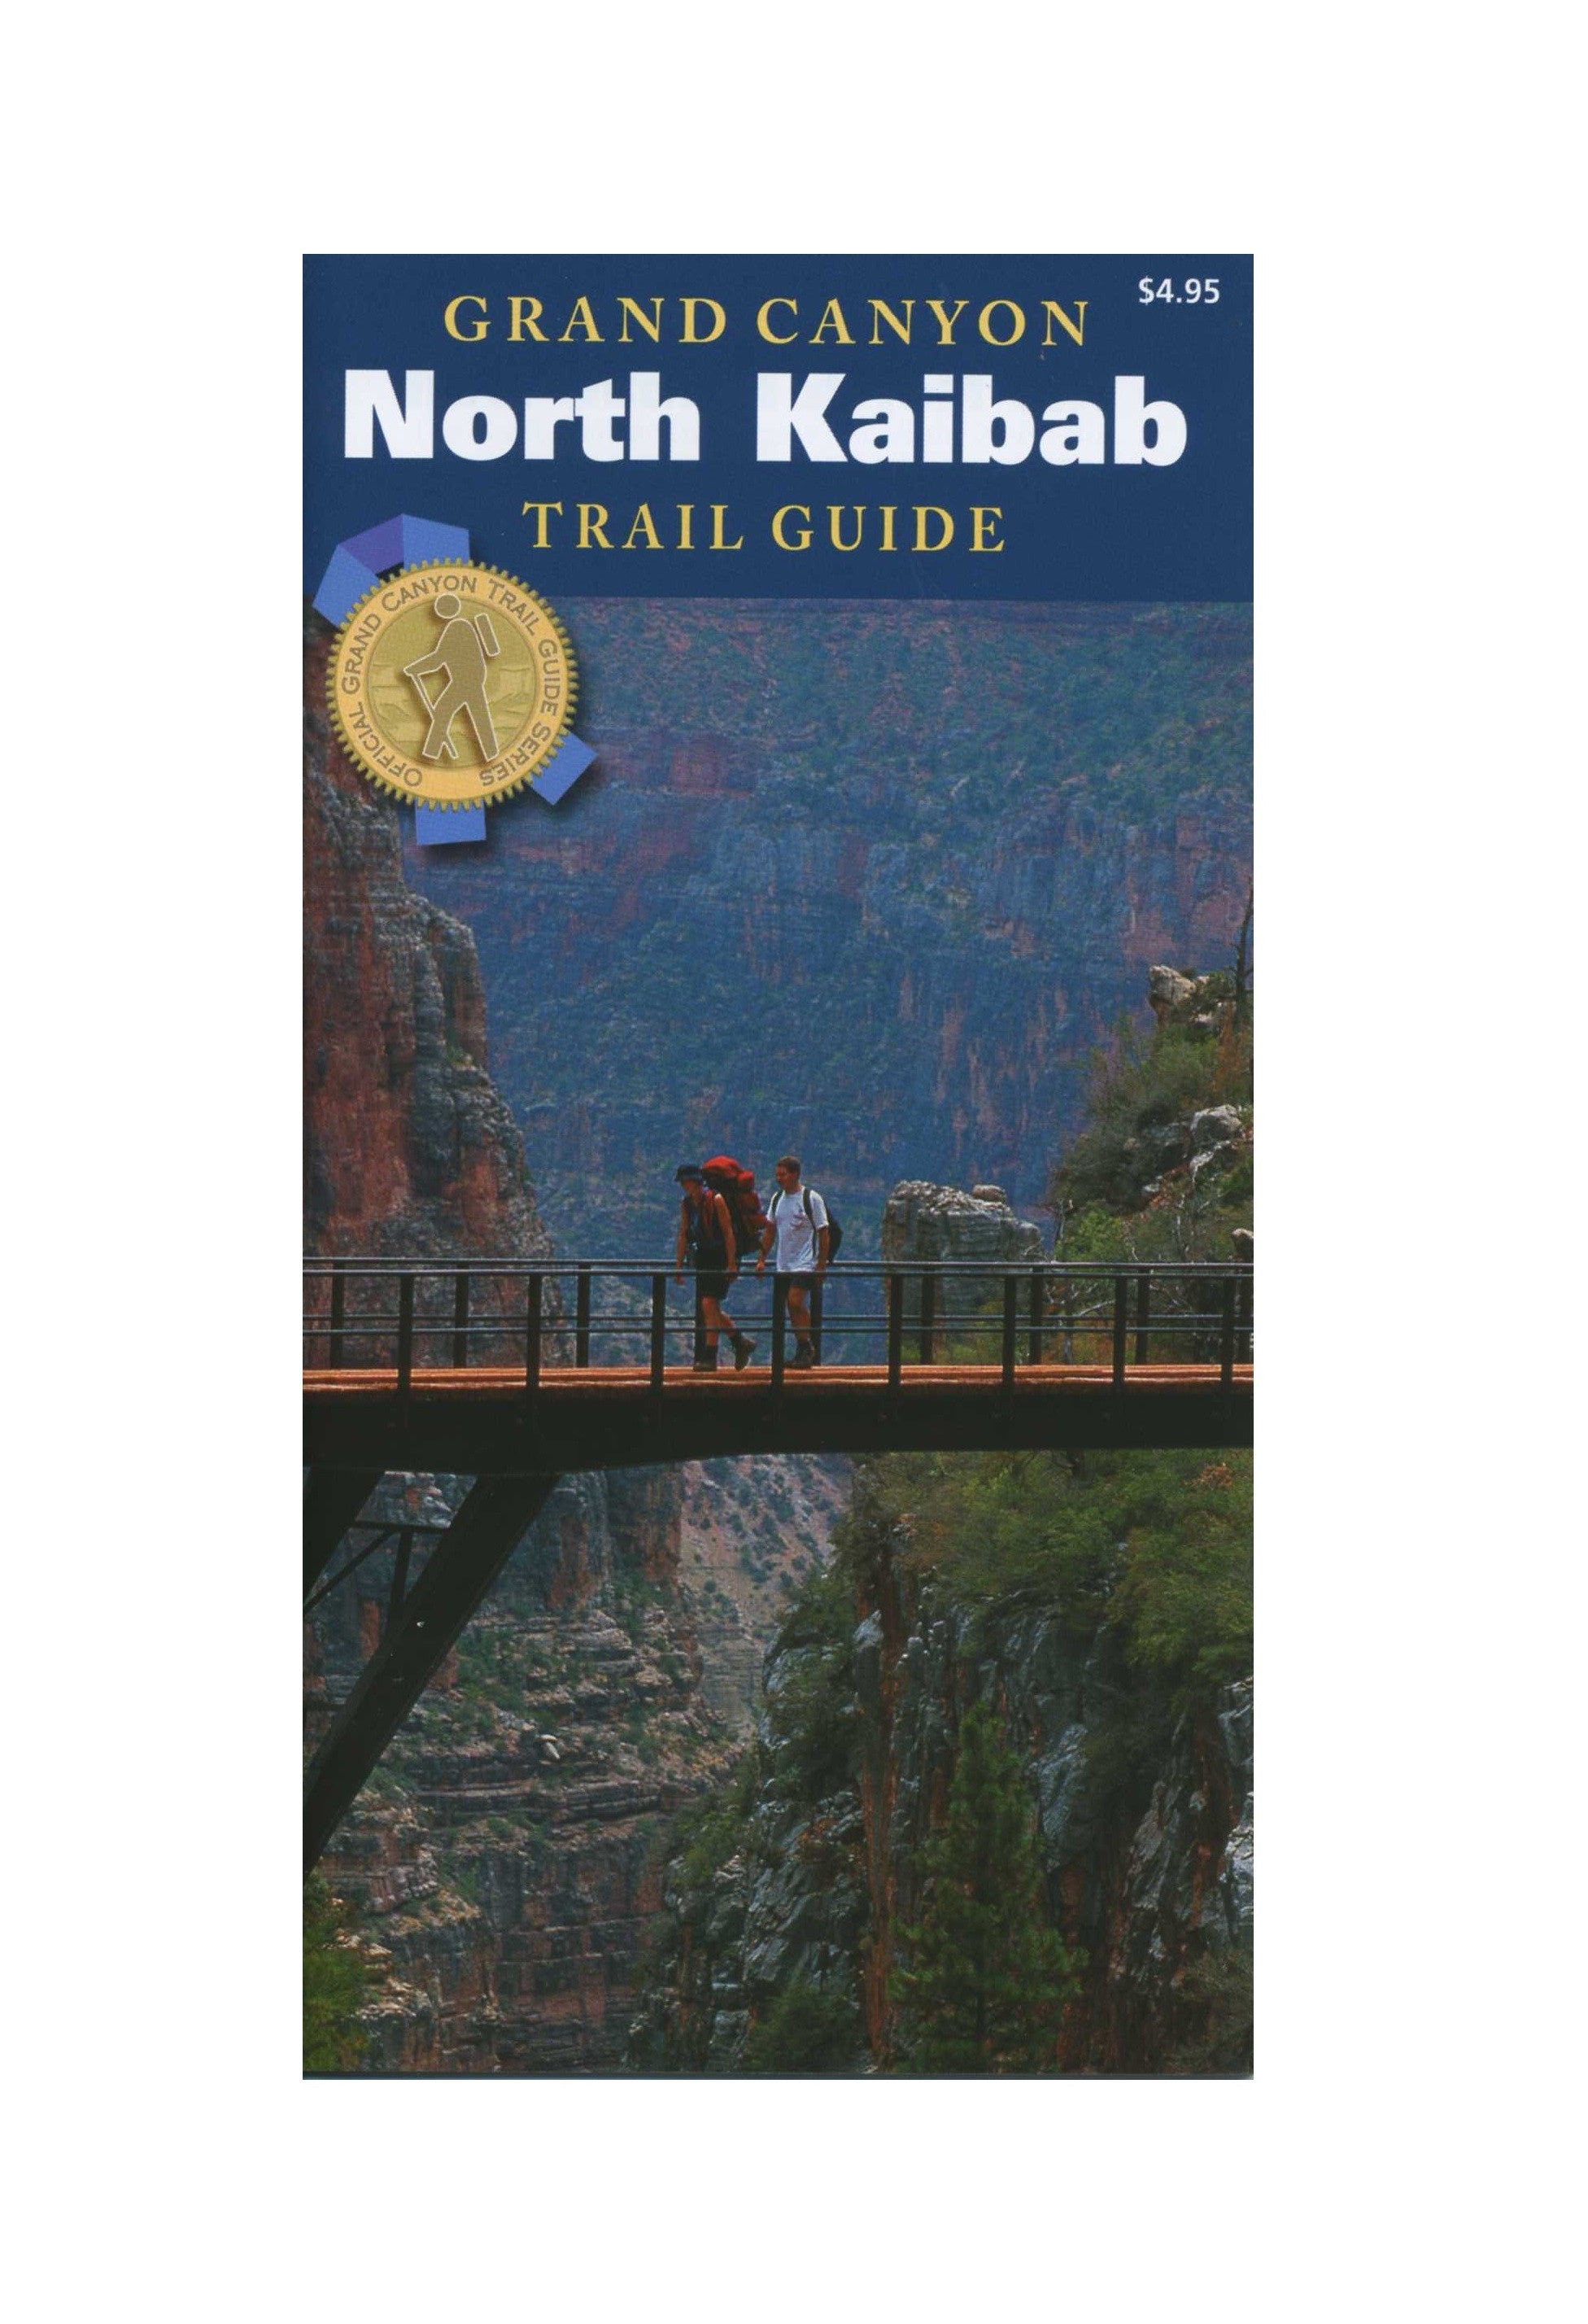 North Kaibab Trail Guide